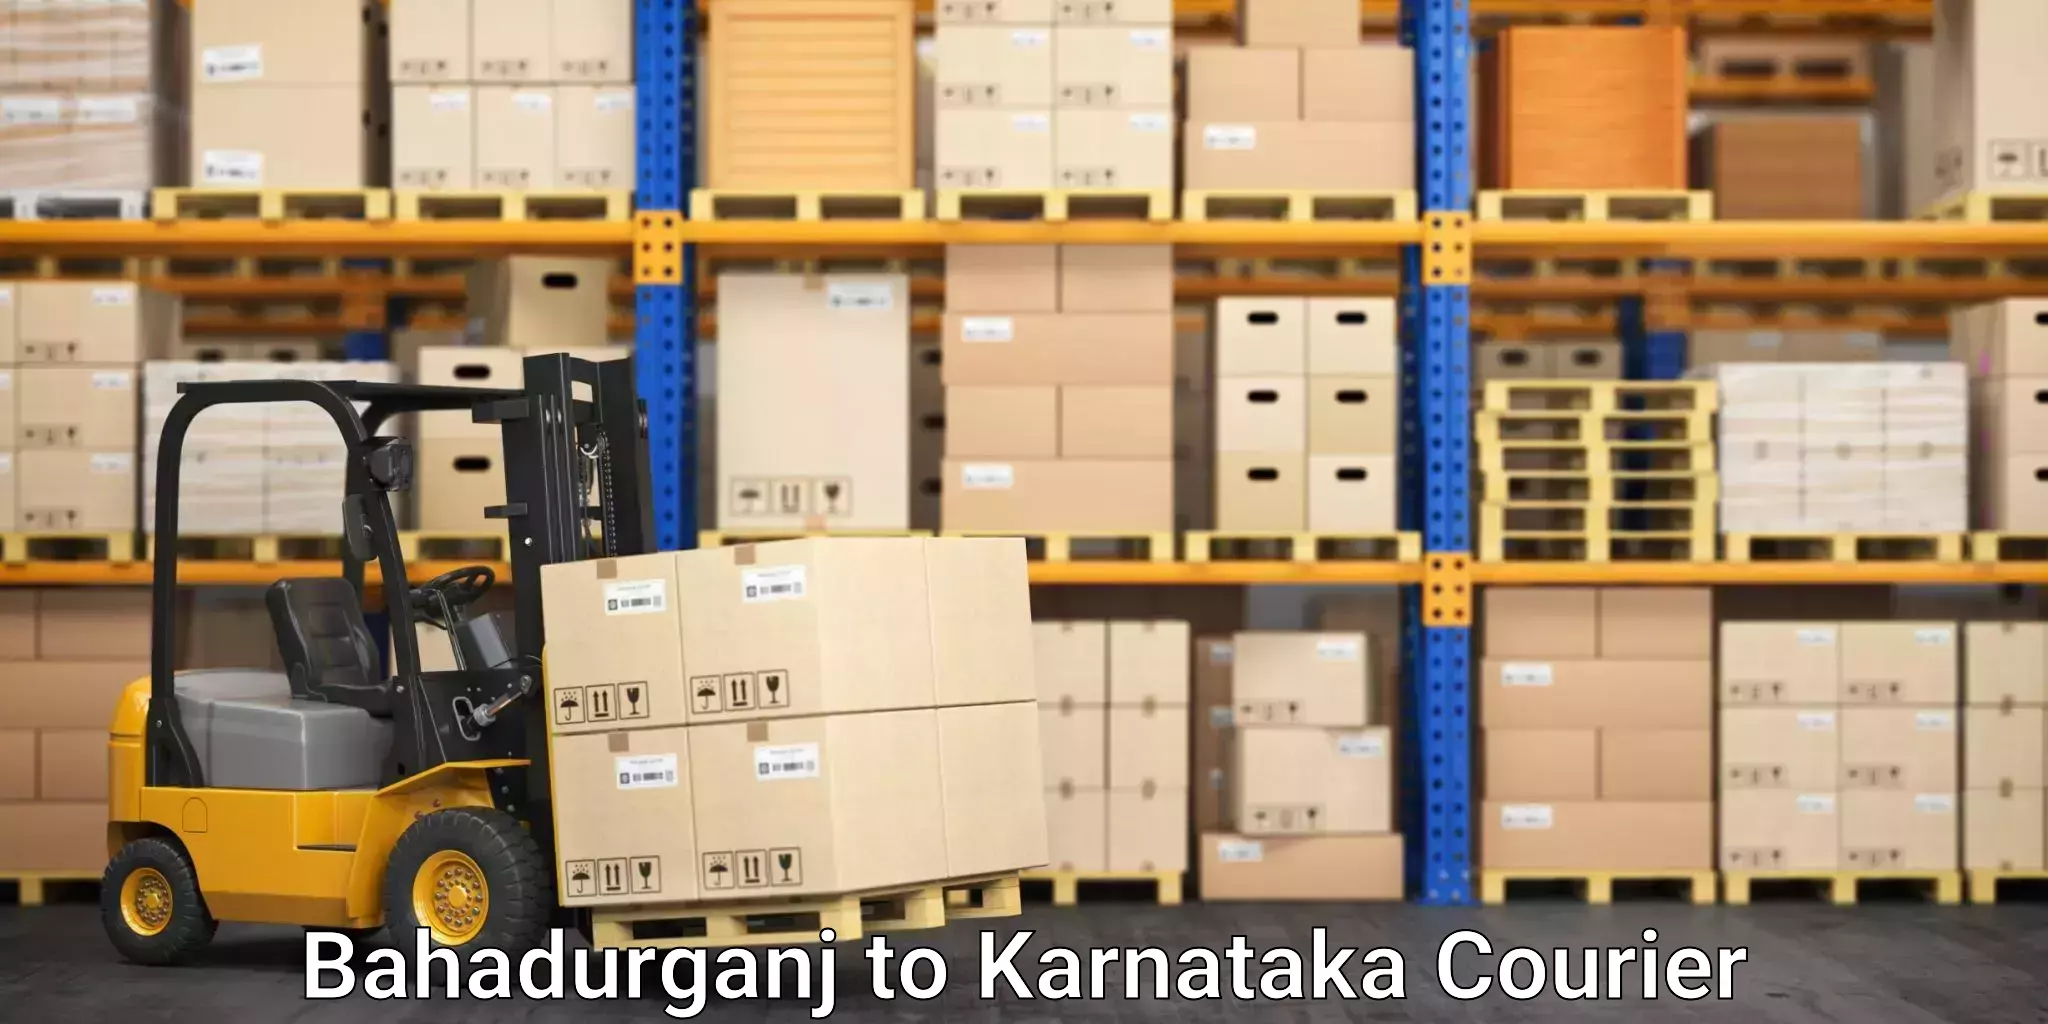 Residential furniture movers Bahadurganj to Kanjarakatte